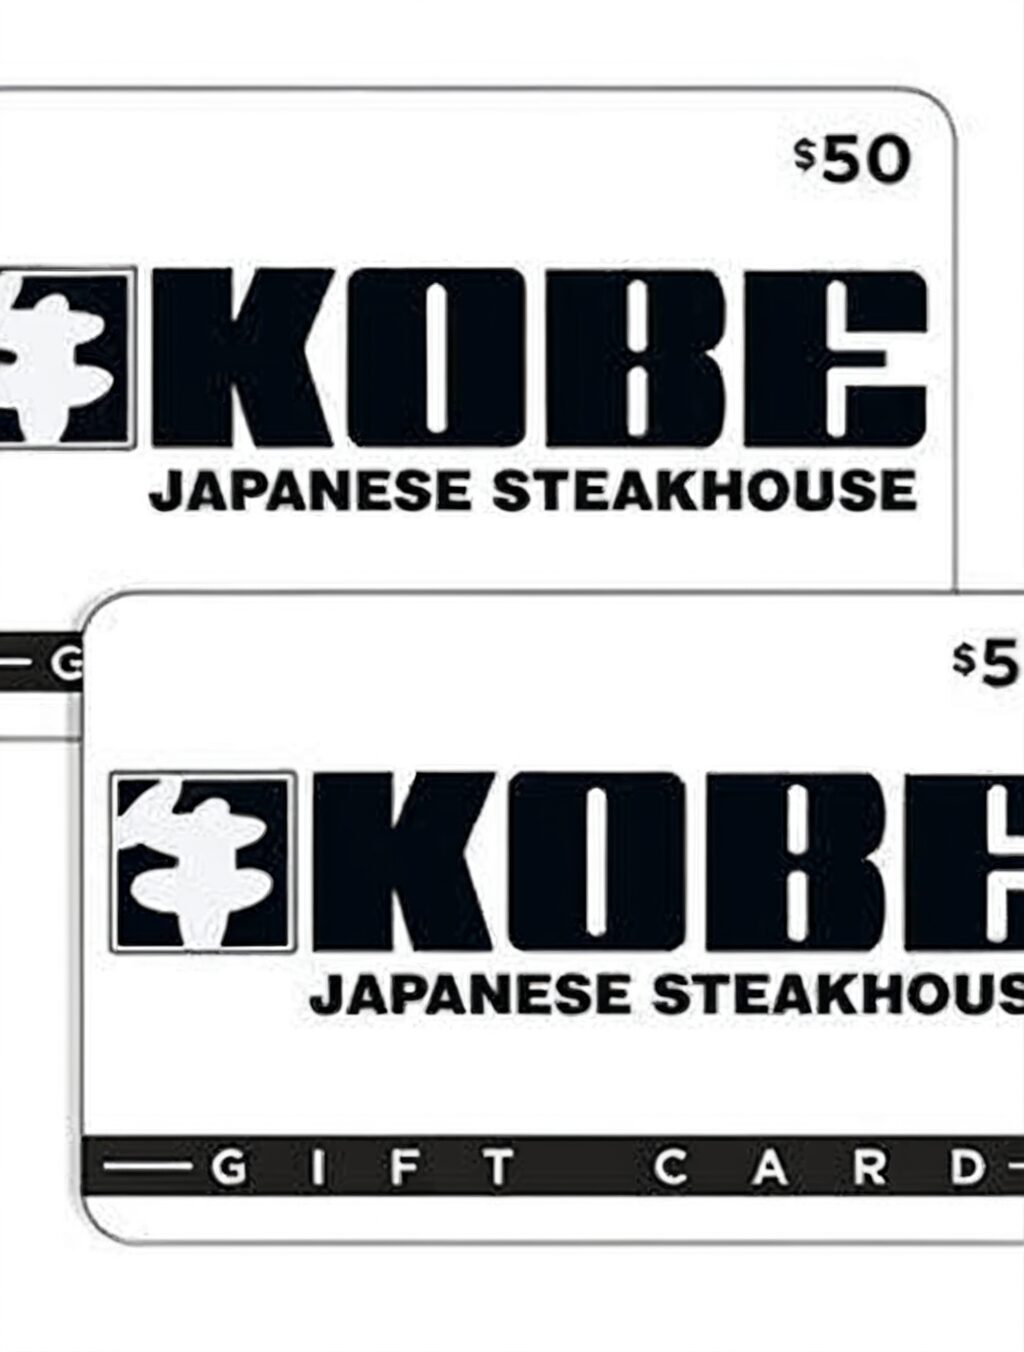 gift card for japanese steakhouse